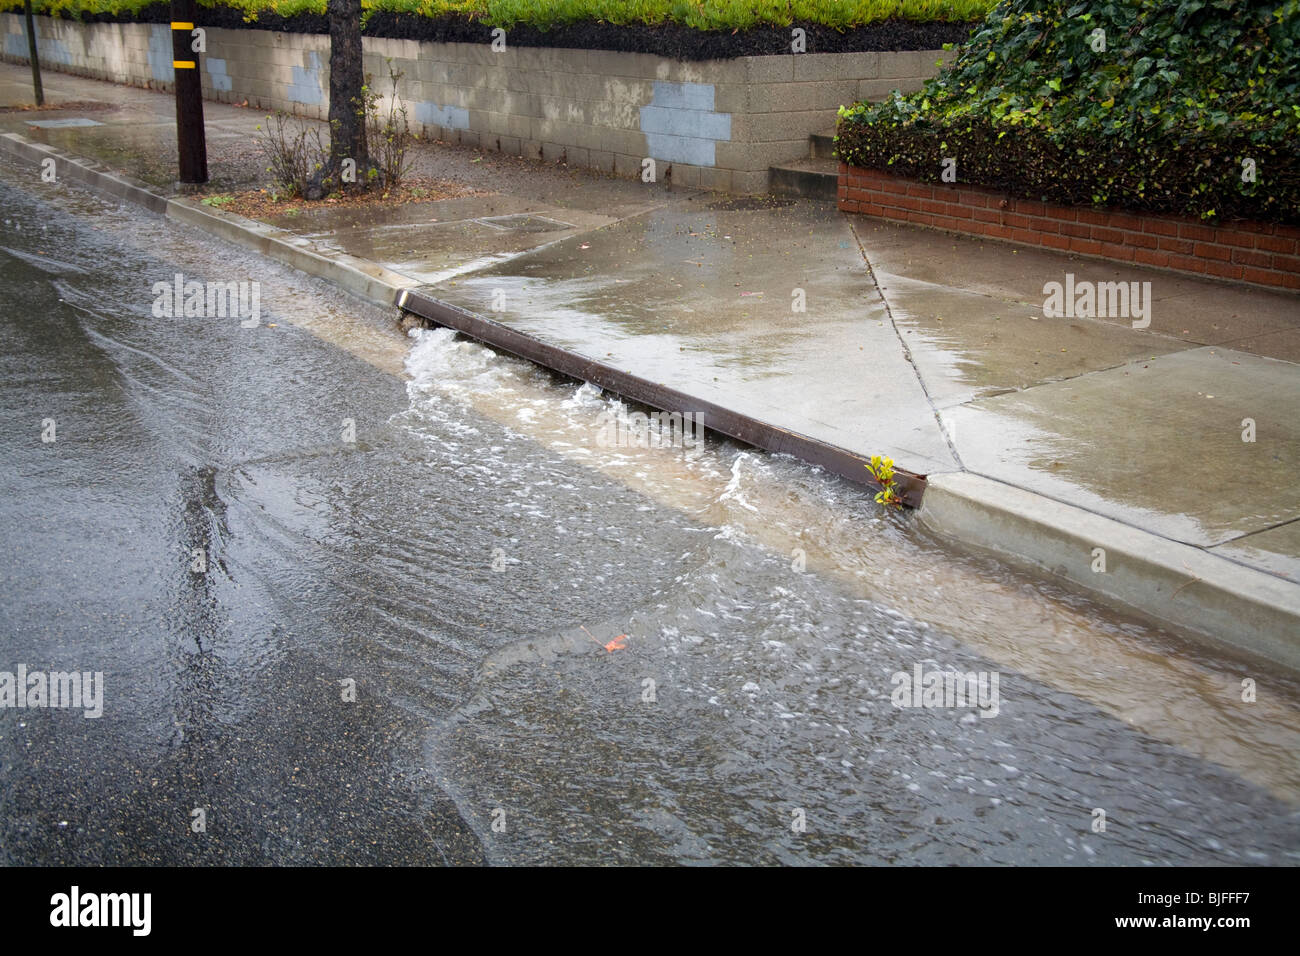 De fortes pluies dans les rues d'écoulement dans les caniveaux de la rue et d'eaux pluviales, Culver City, Californie, USA Banque D'Images